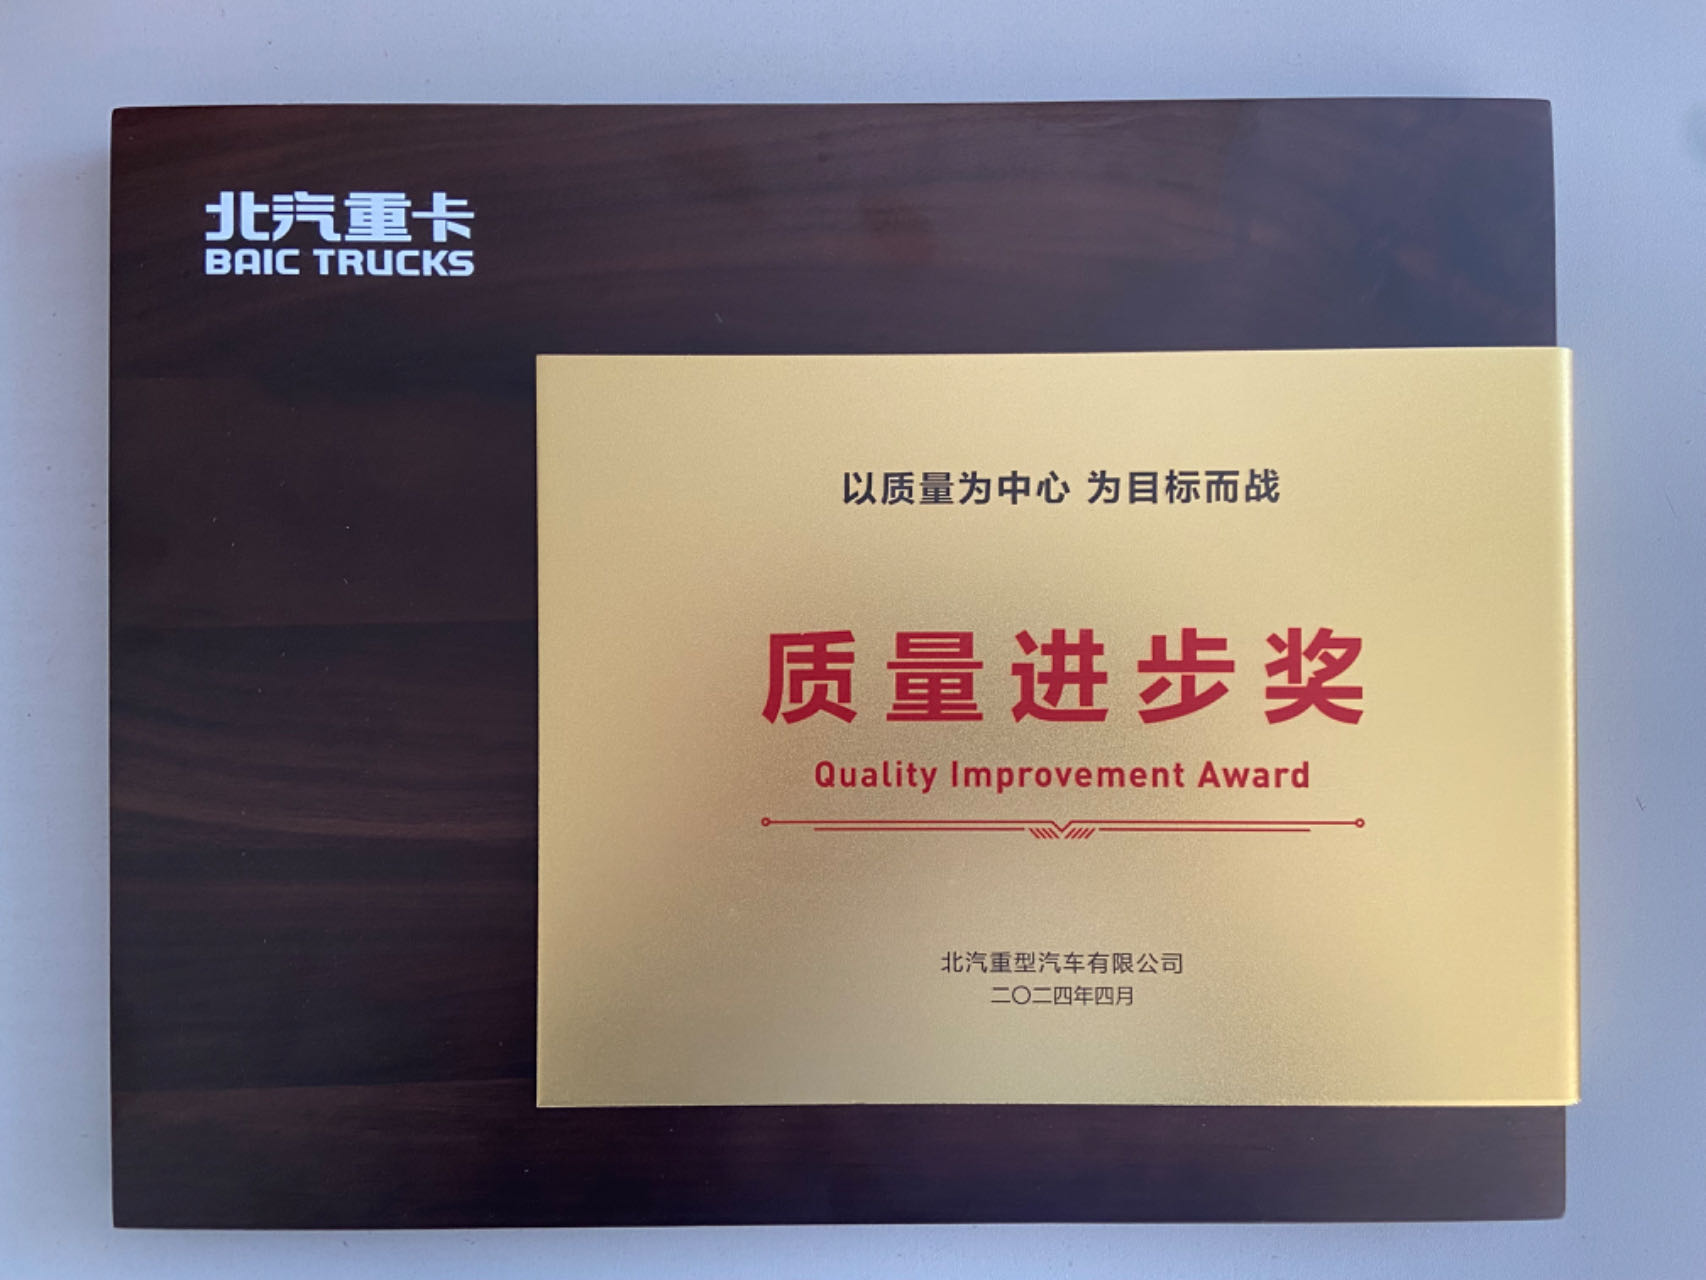 热烈祝贺我公司荣获北汽重卡“质量进步奖”荣誉称号